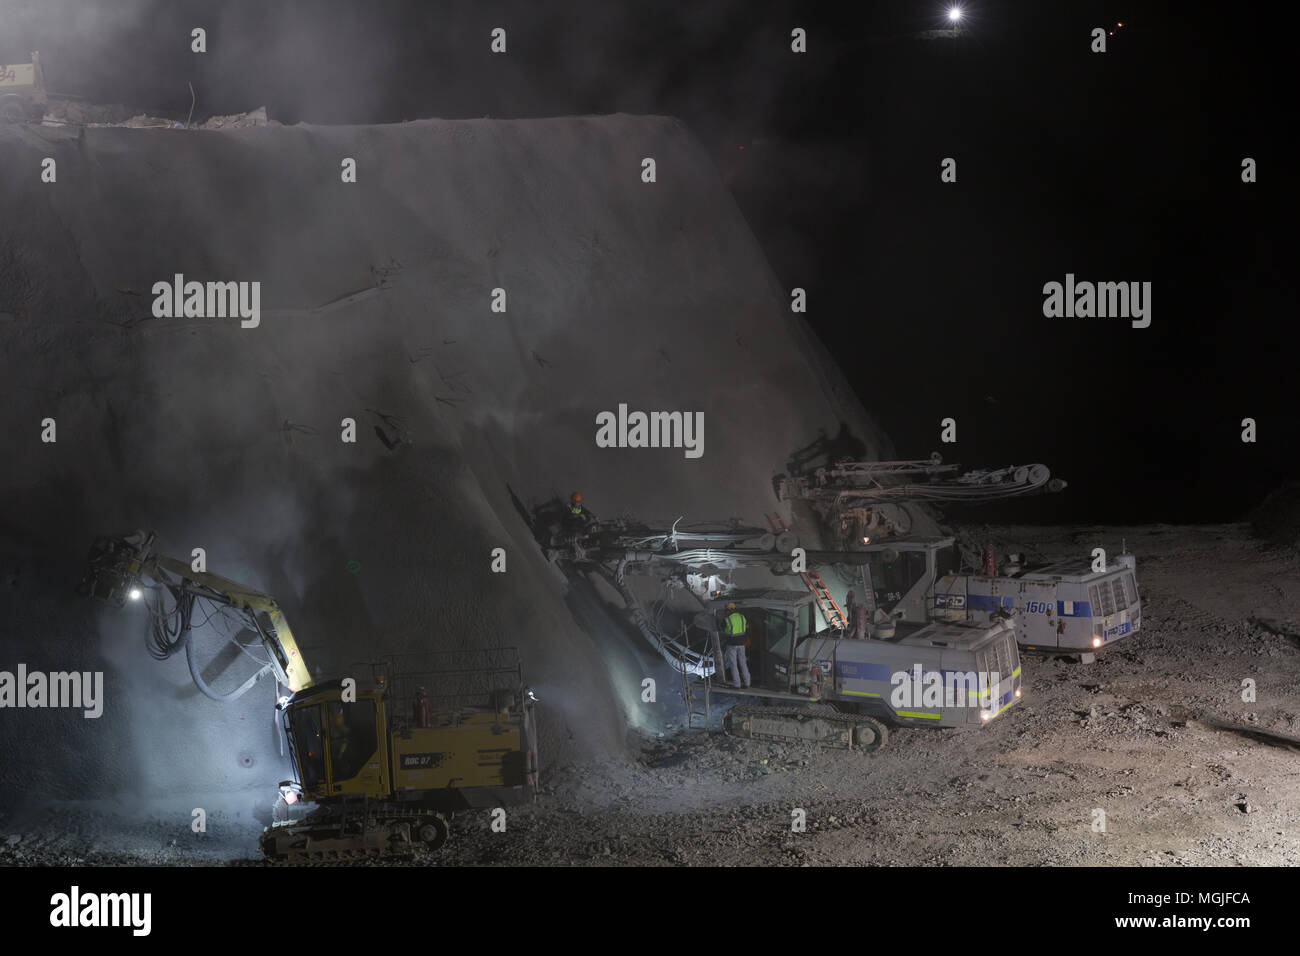 Impianti di perforazione durante il turno di notte in una miniera a cielo aperto Foto Stock